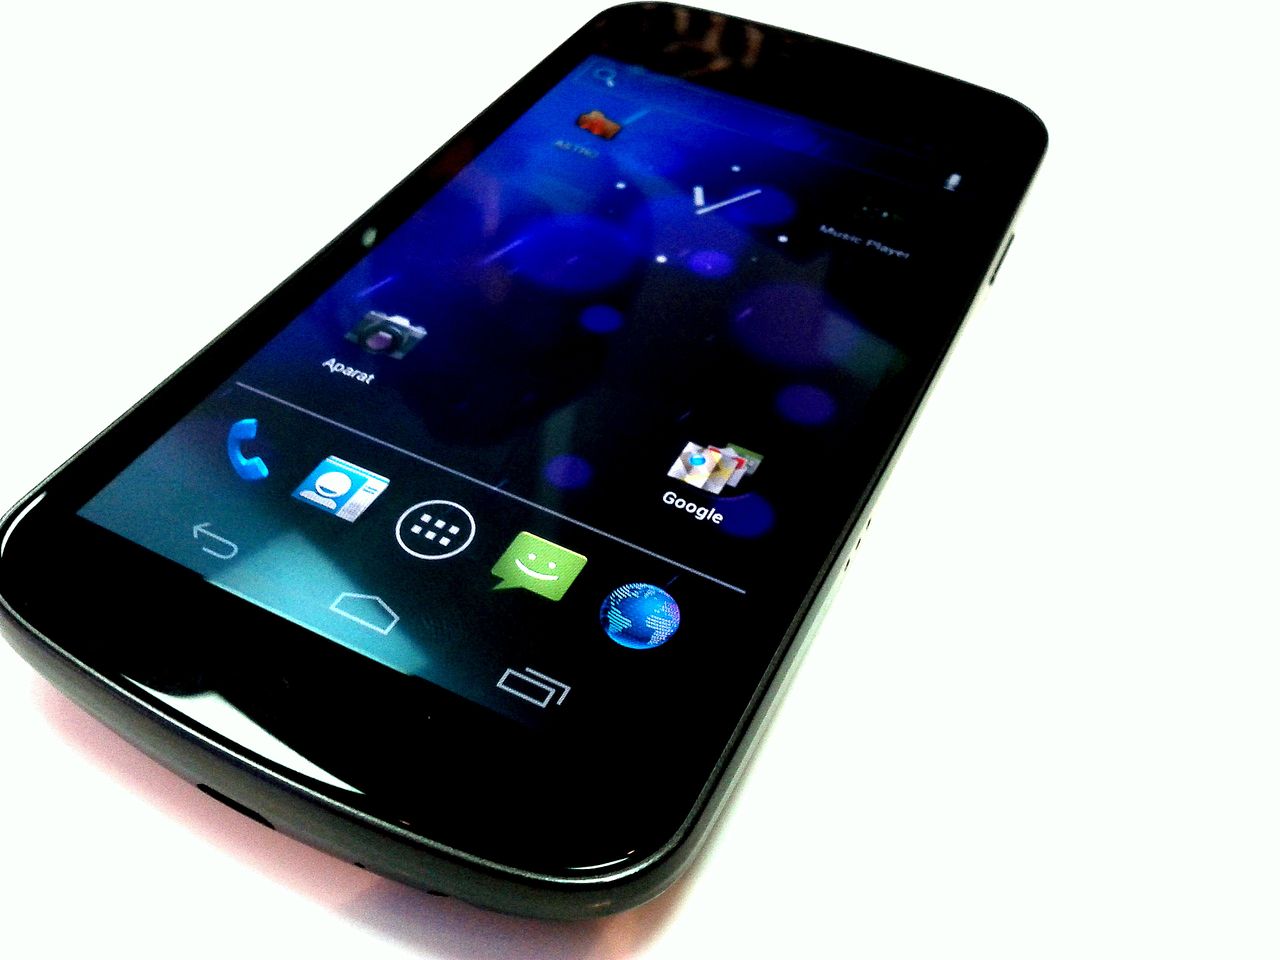 Nowe smartfony Nexus marki Sony, Samsung i LG jeszcze w tym roku?